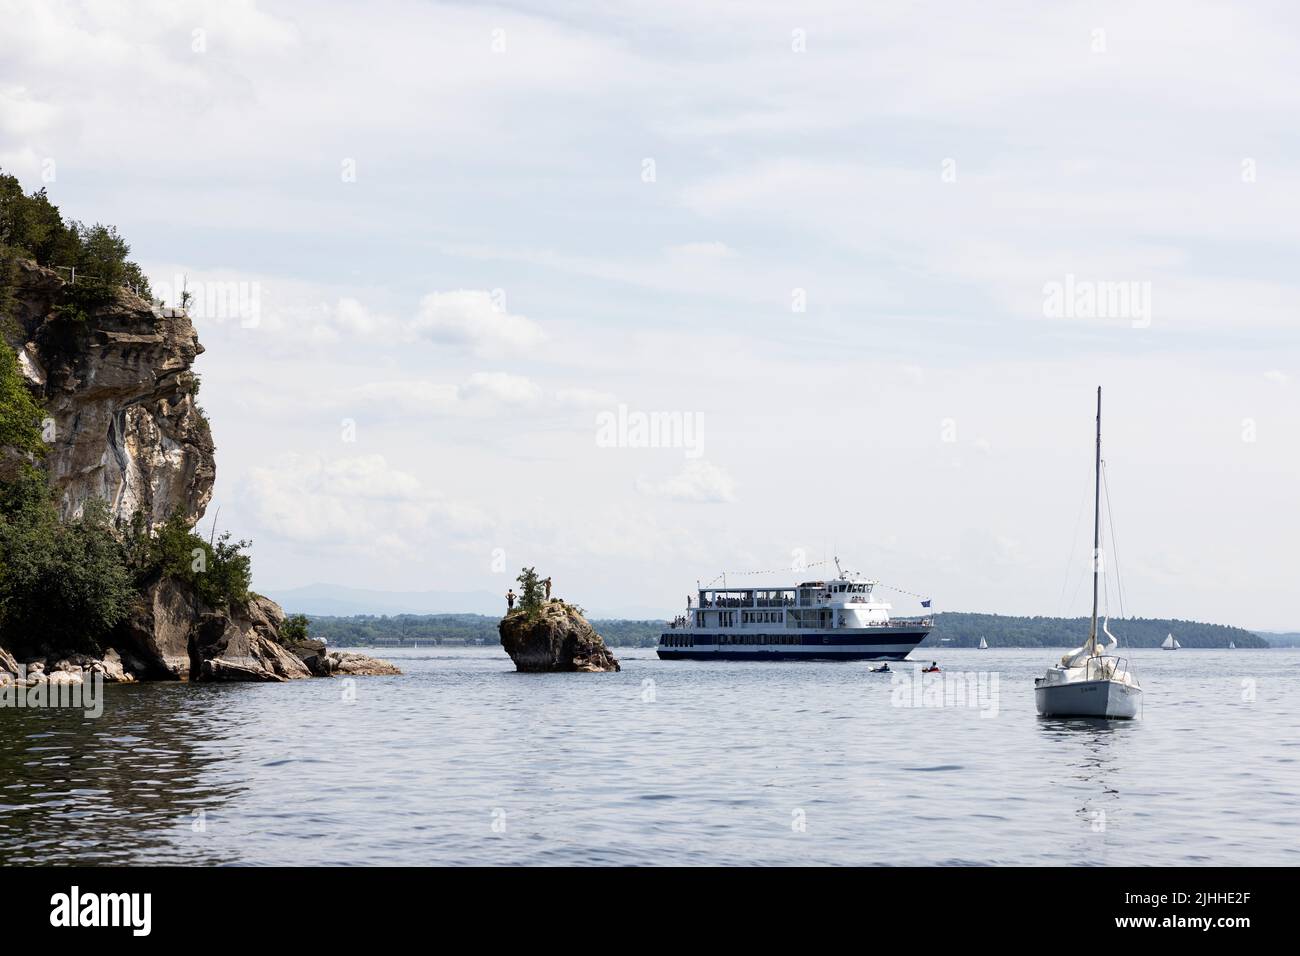 La nave da crociera turistica Spirit of Ethan Allen e una barca a vela di Lone Rock Point sul lago Champlain a Burlington, Vermont, Stati Uniti. Foto Stock